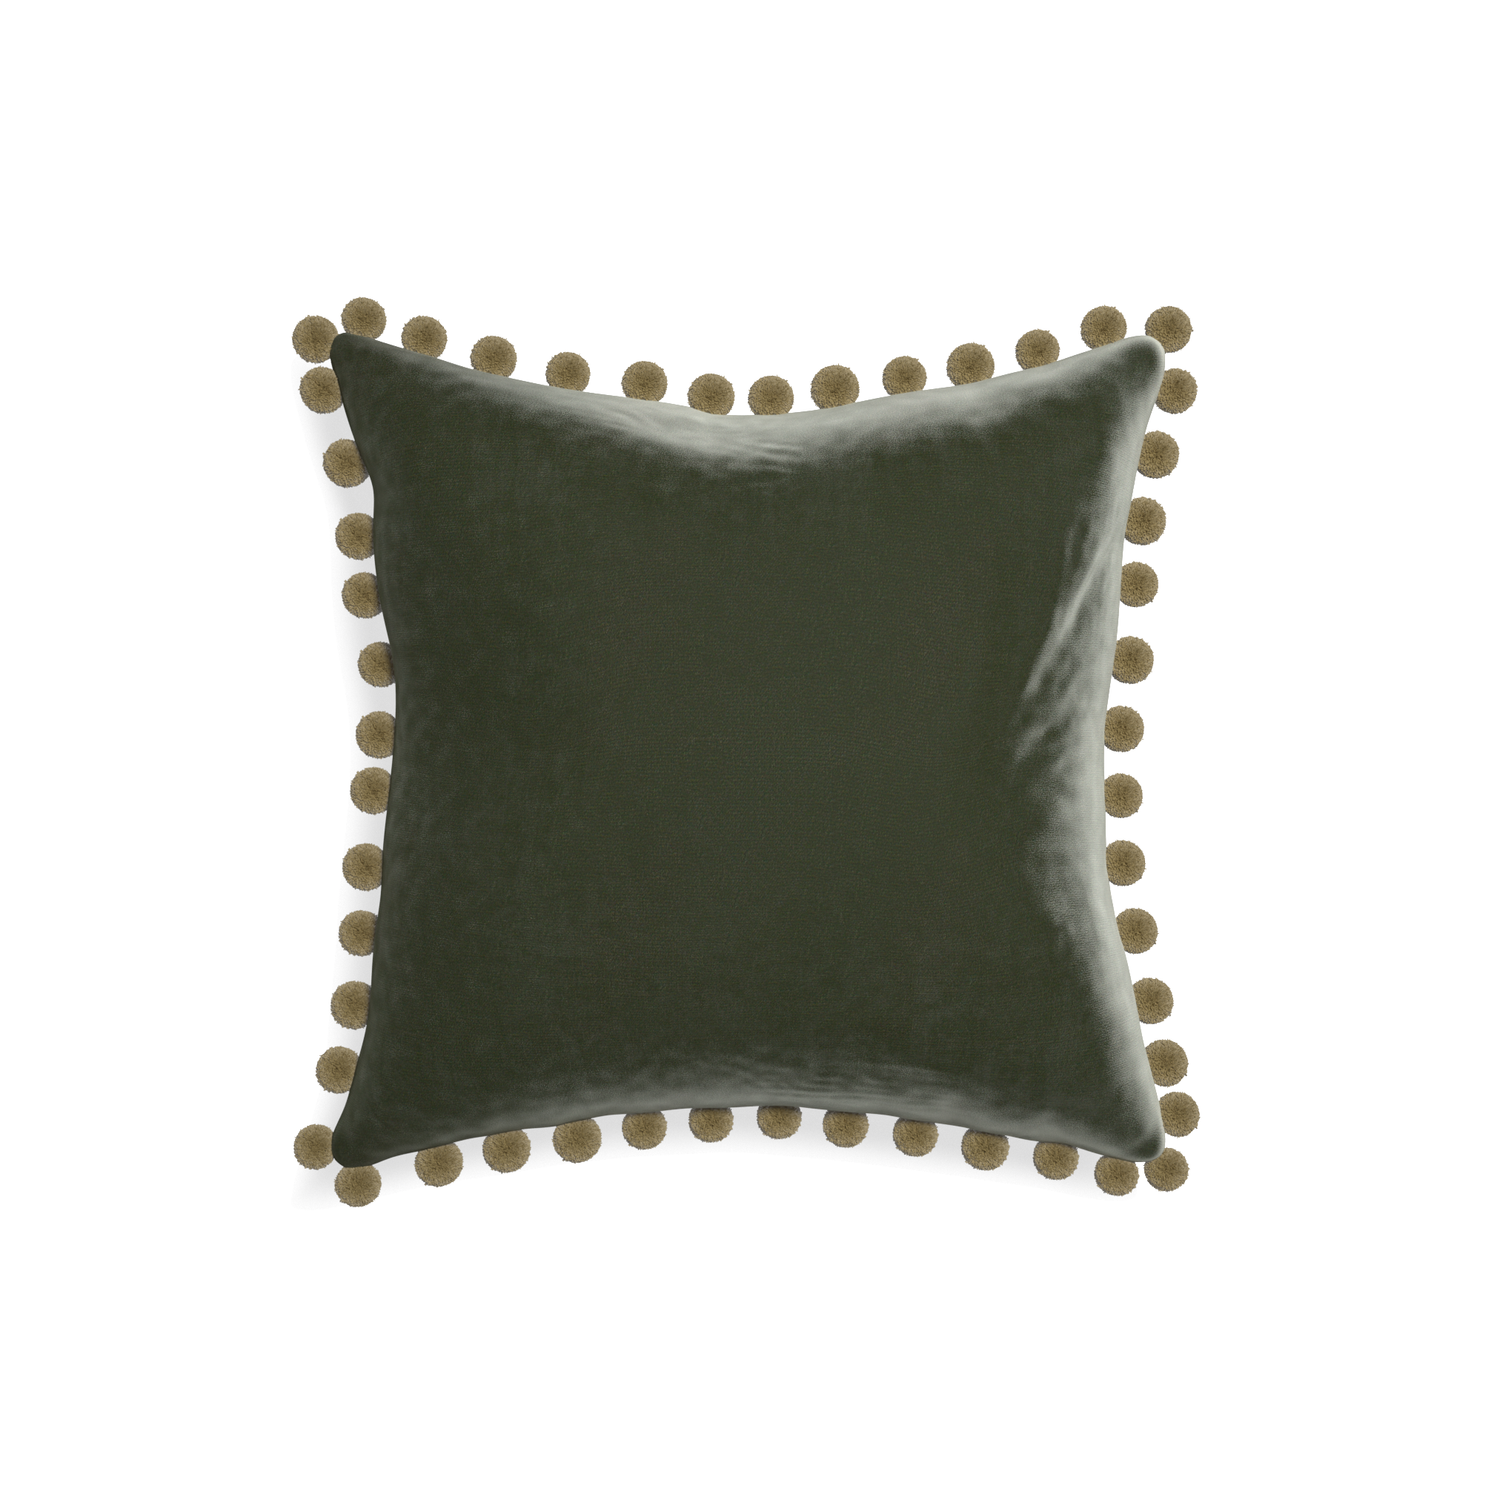 square fern green velvet pillow with olive green pom poms